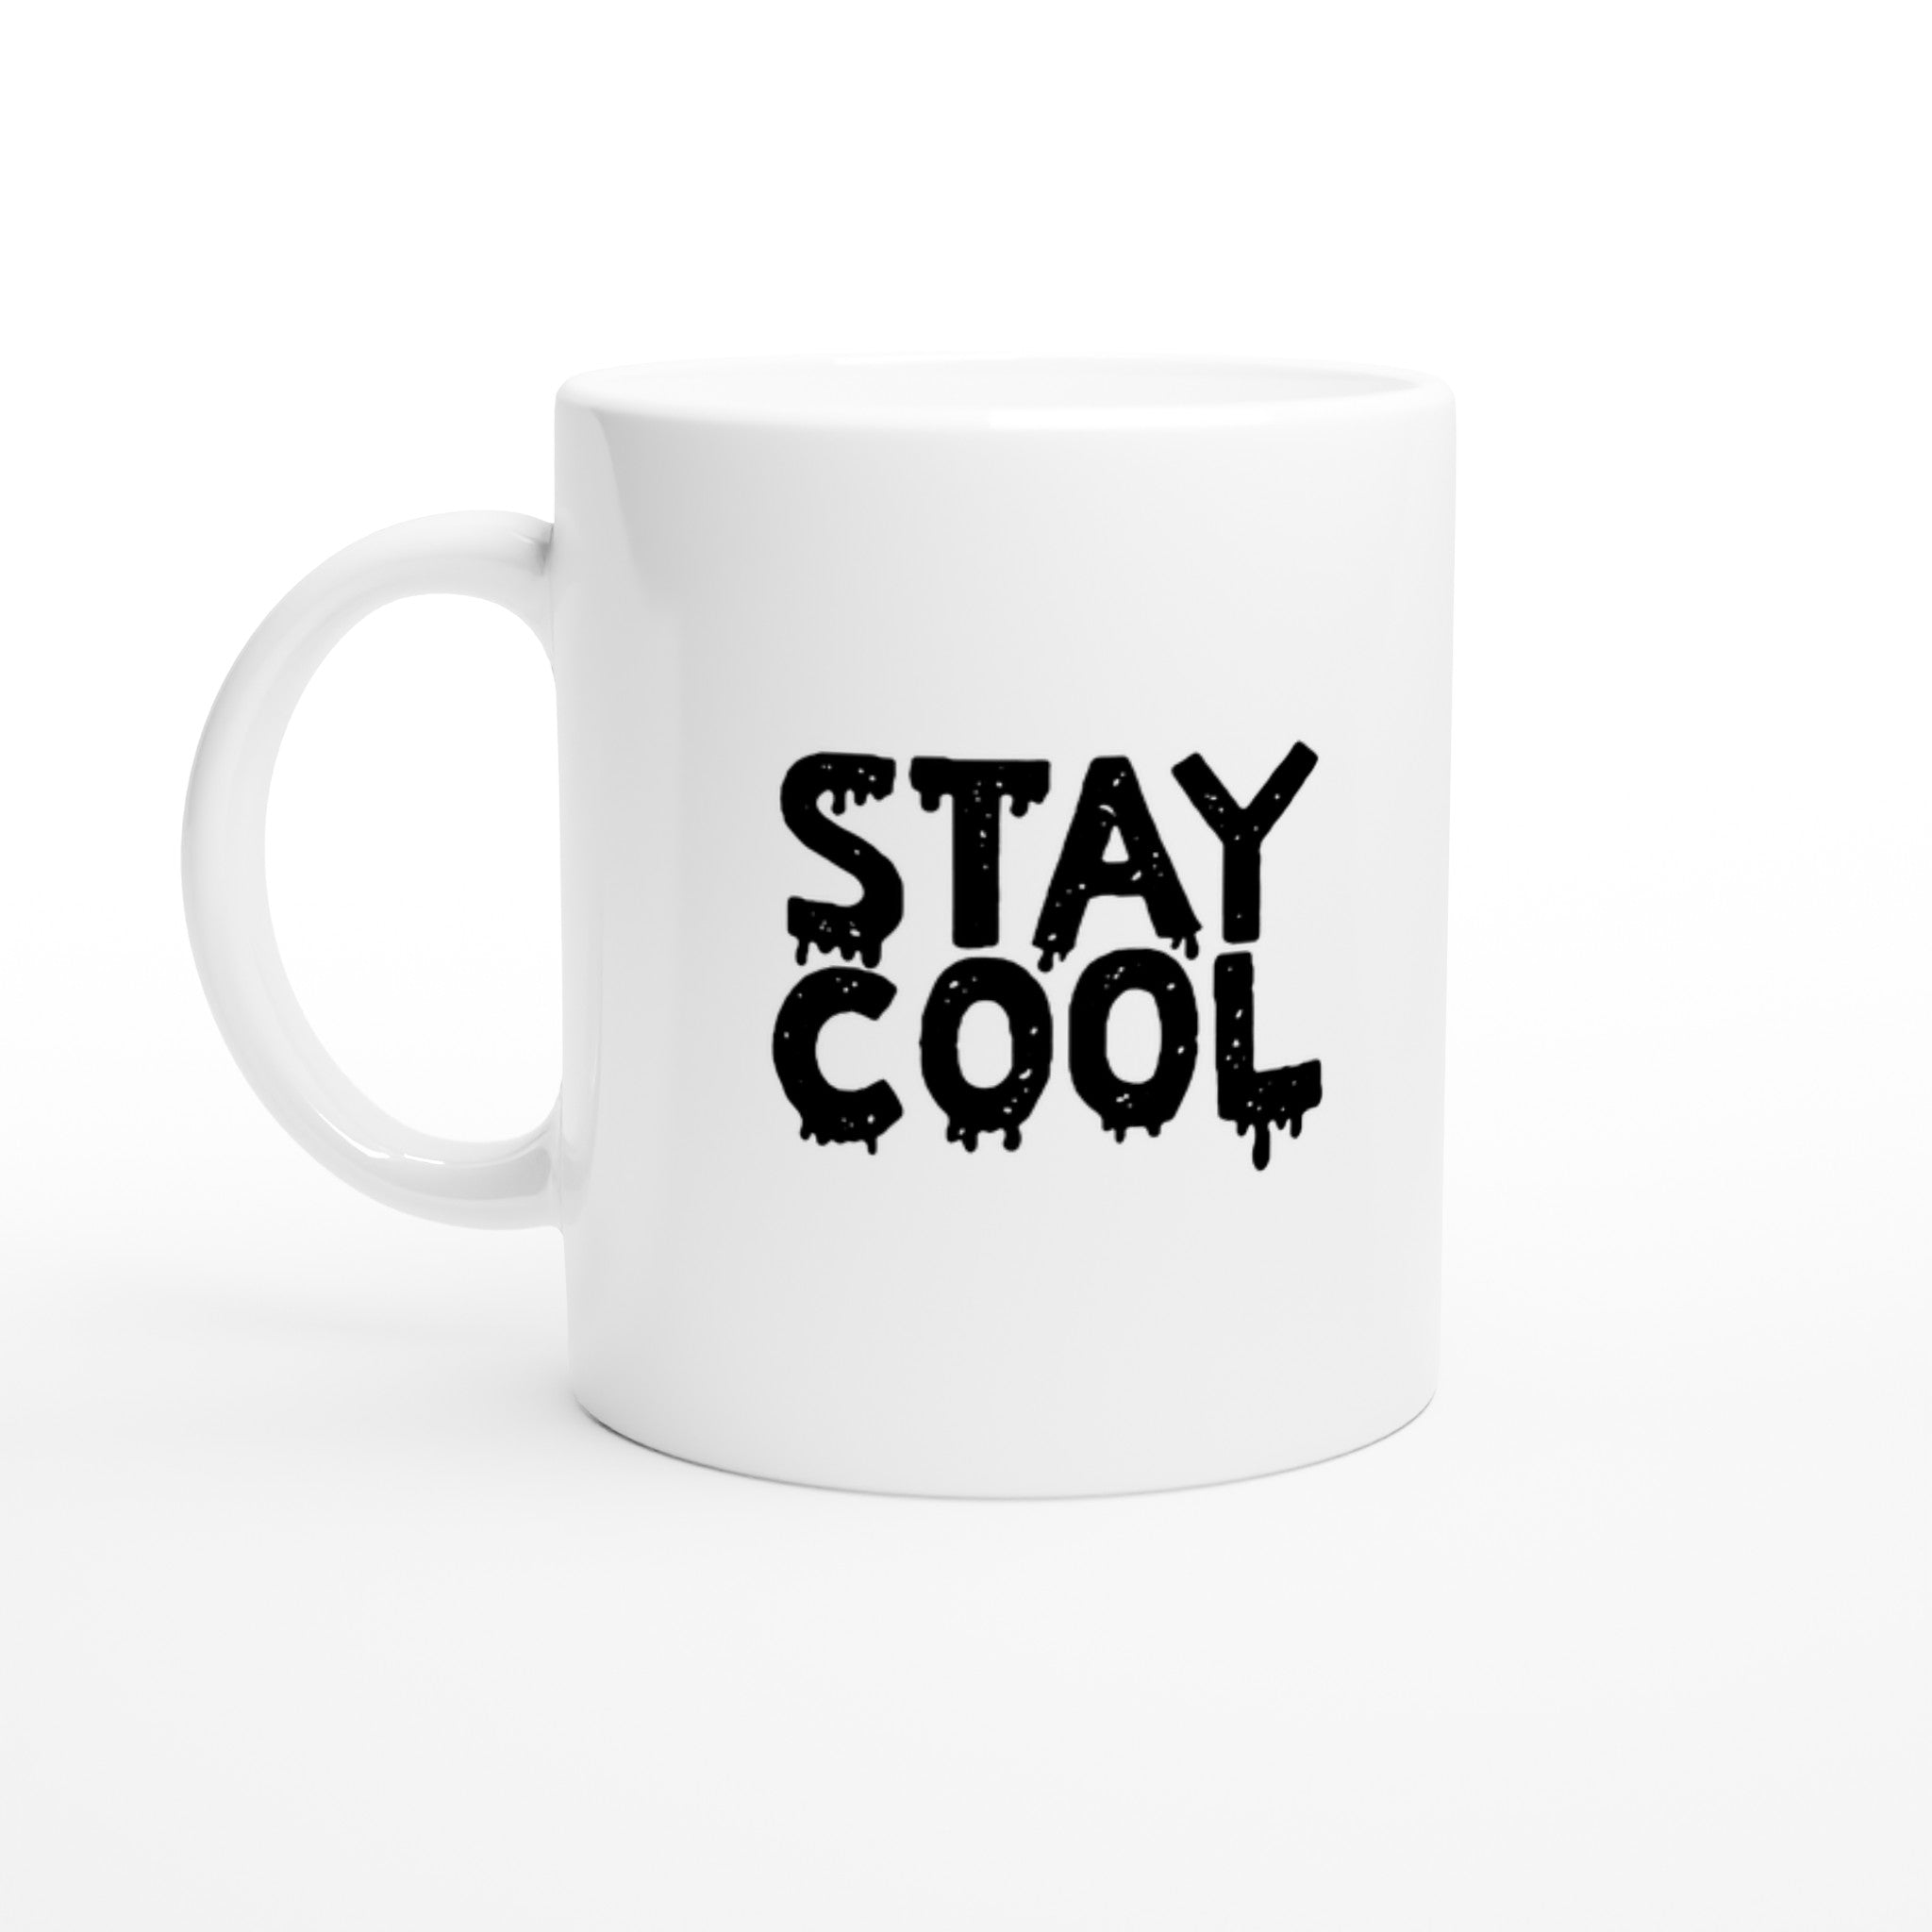 STAY COOL Mug - Optimalprint